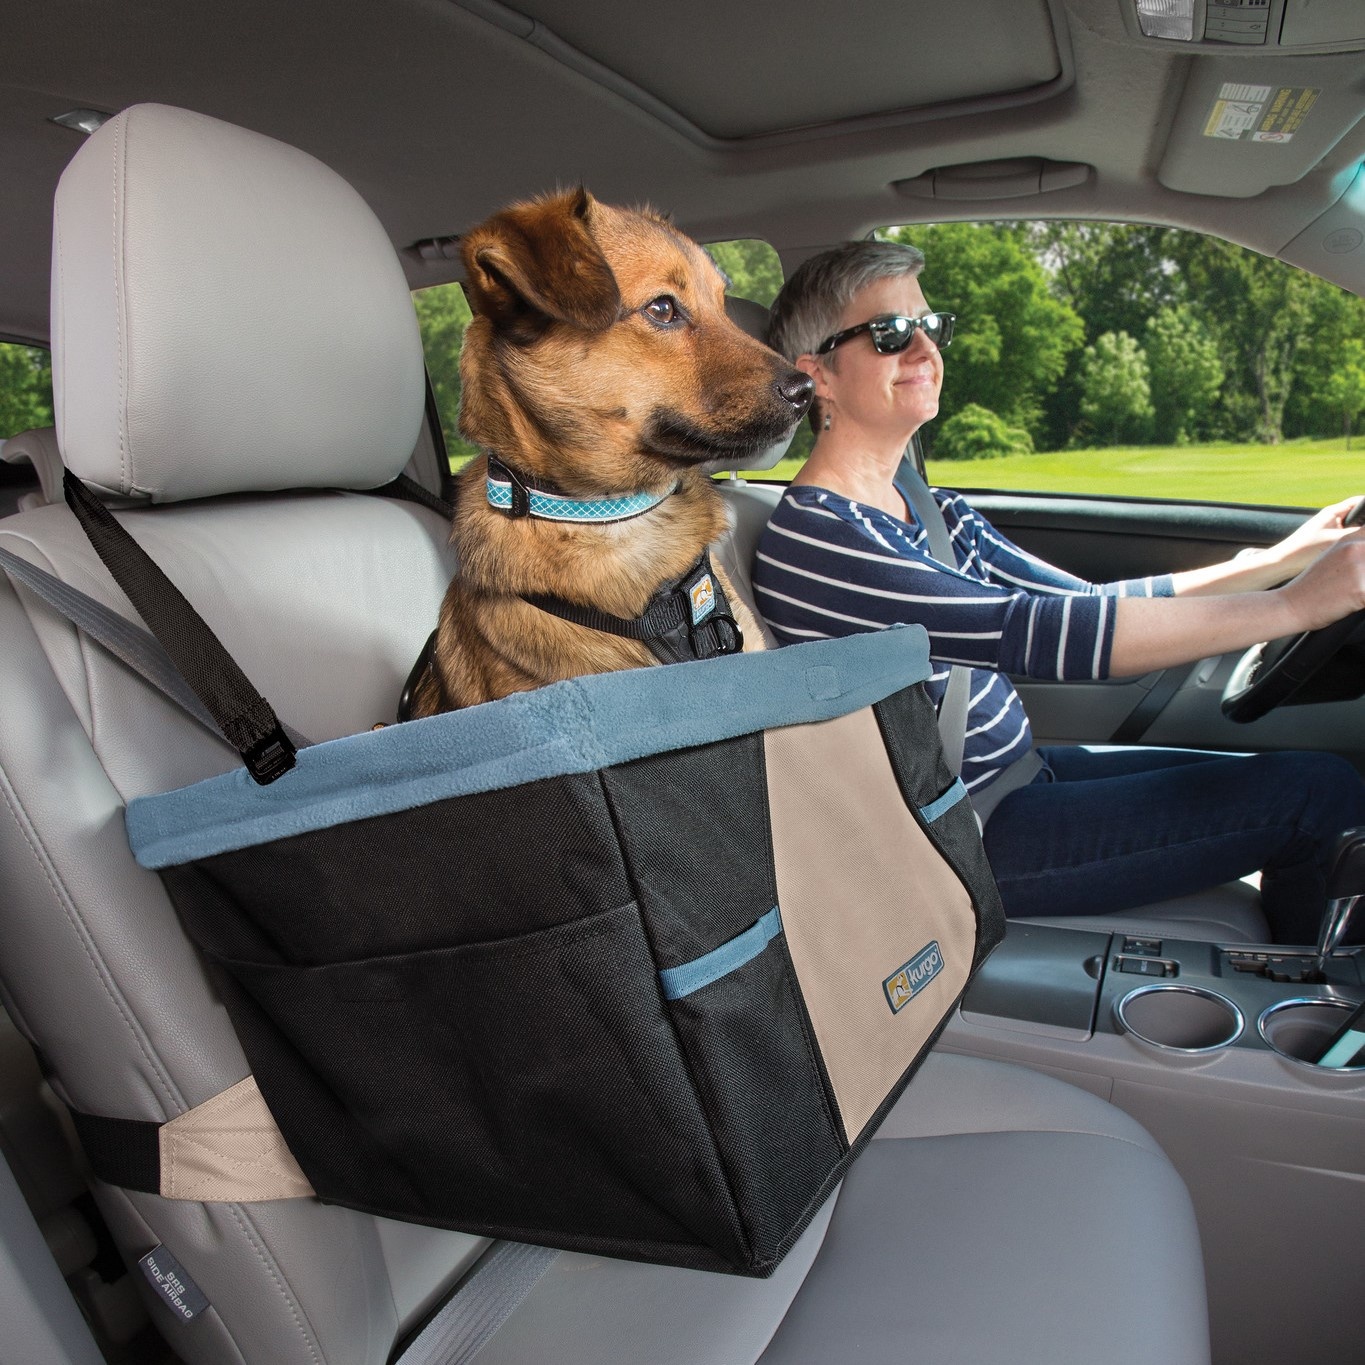 bewaker Gematigd Appal Kurgo Rover Booster Seat - autostoel voor kleine honden | Max&Luna.nl -  Max&Luna